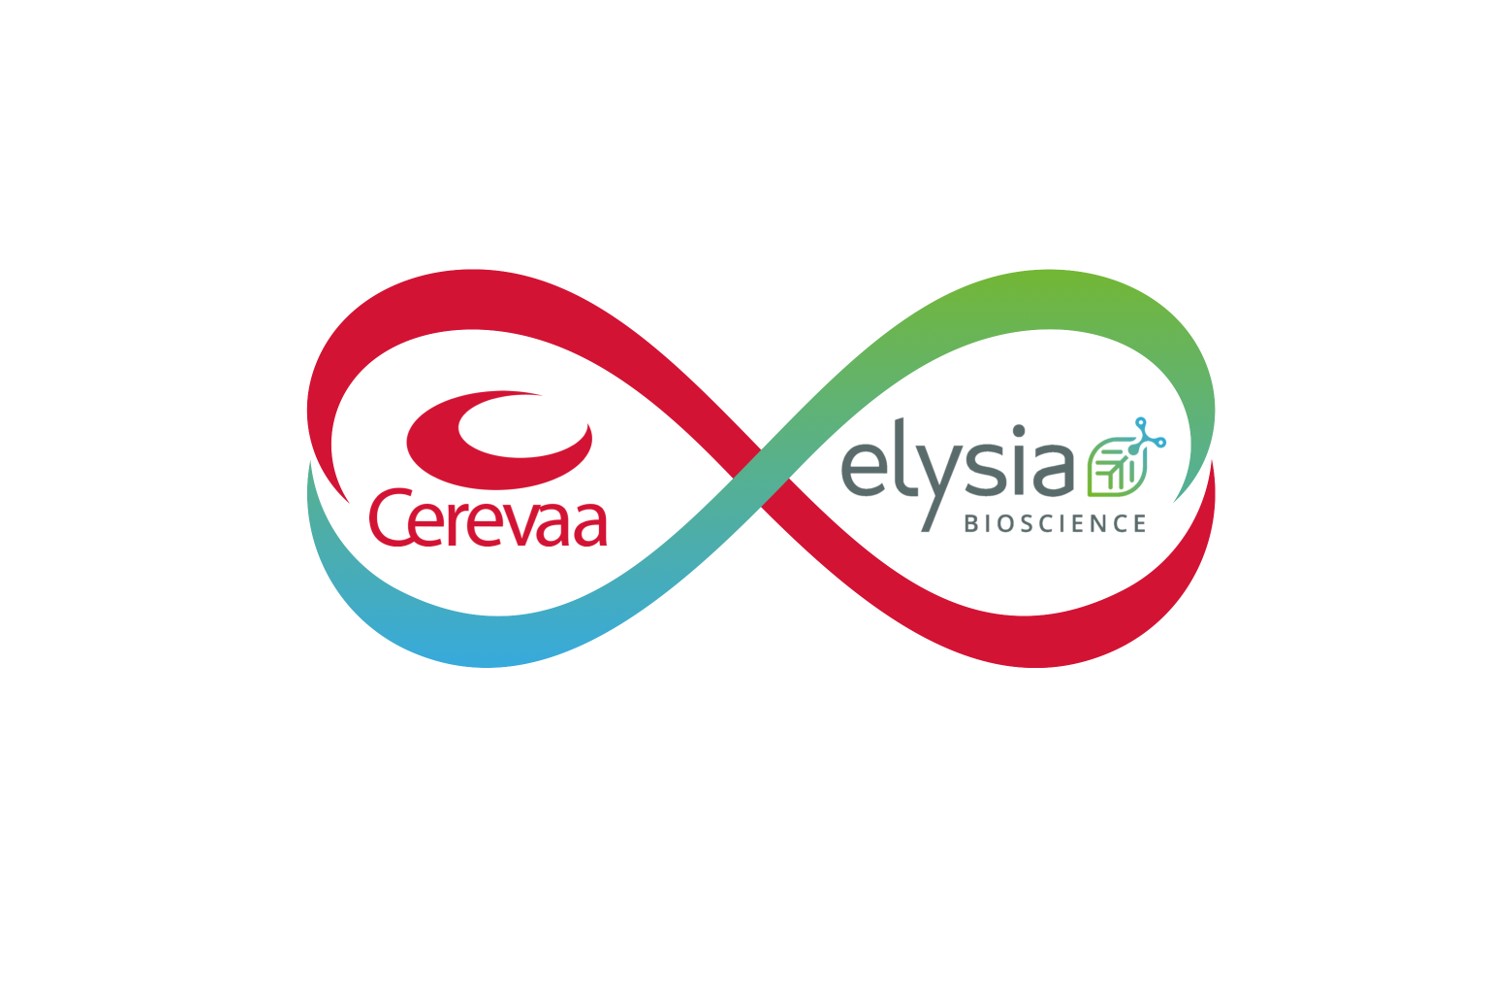 Logo partenariat Elysia Bioscience Cerevaa